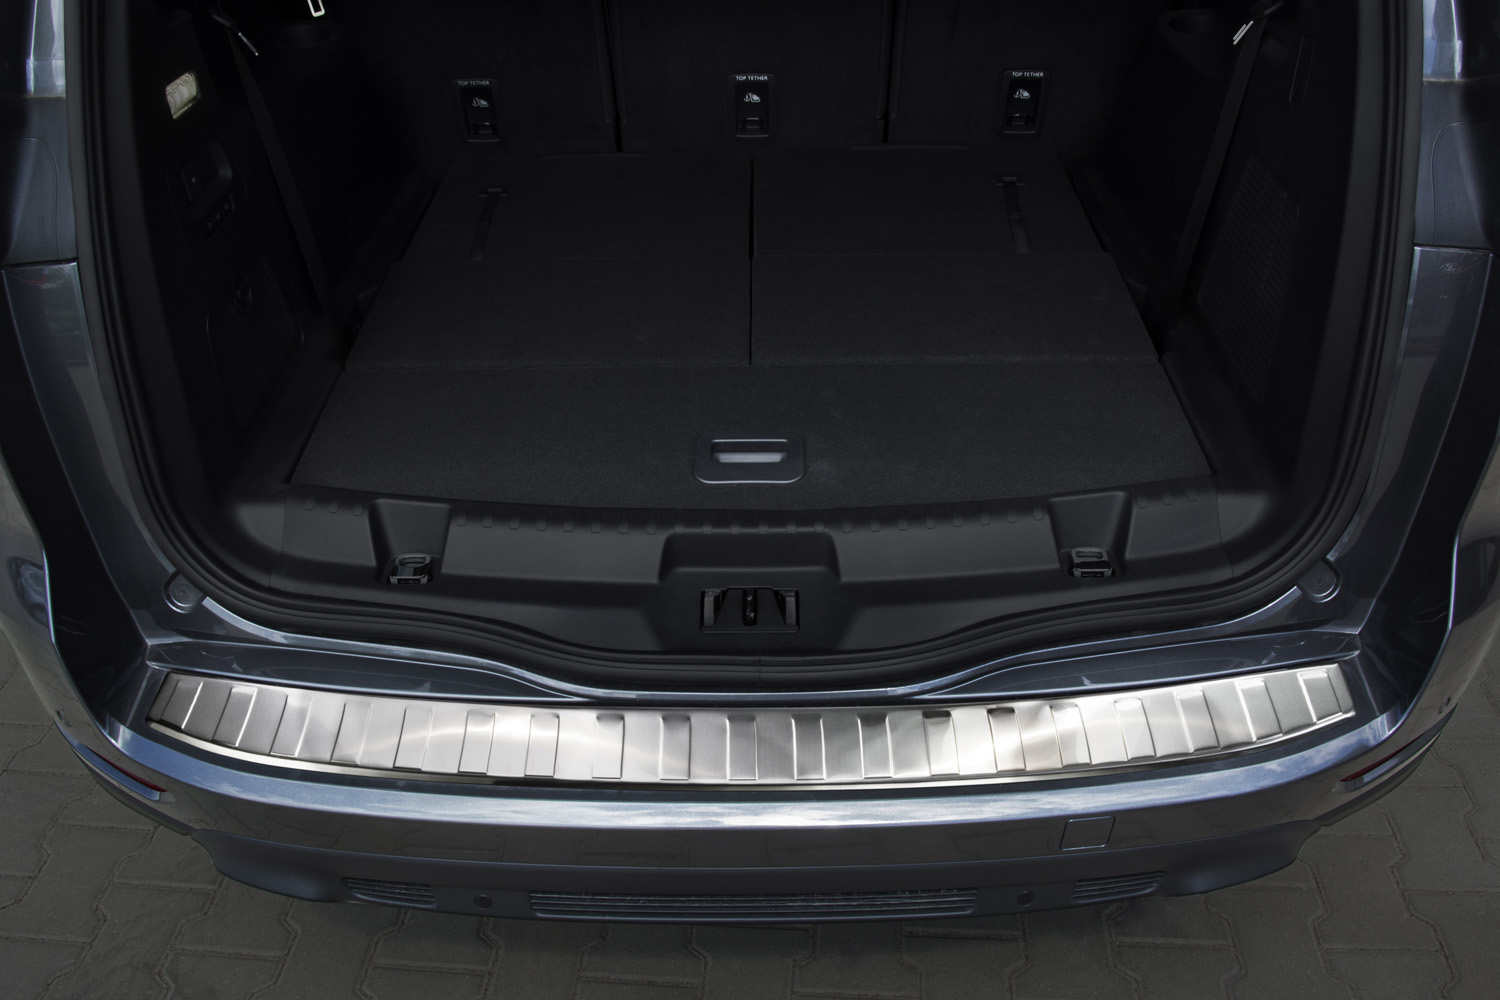 Ladekantenschutz für Ford S-Max - Schutz für die Ladekante Ihres Fahrzeuges